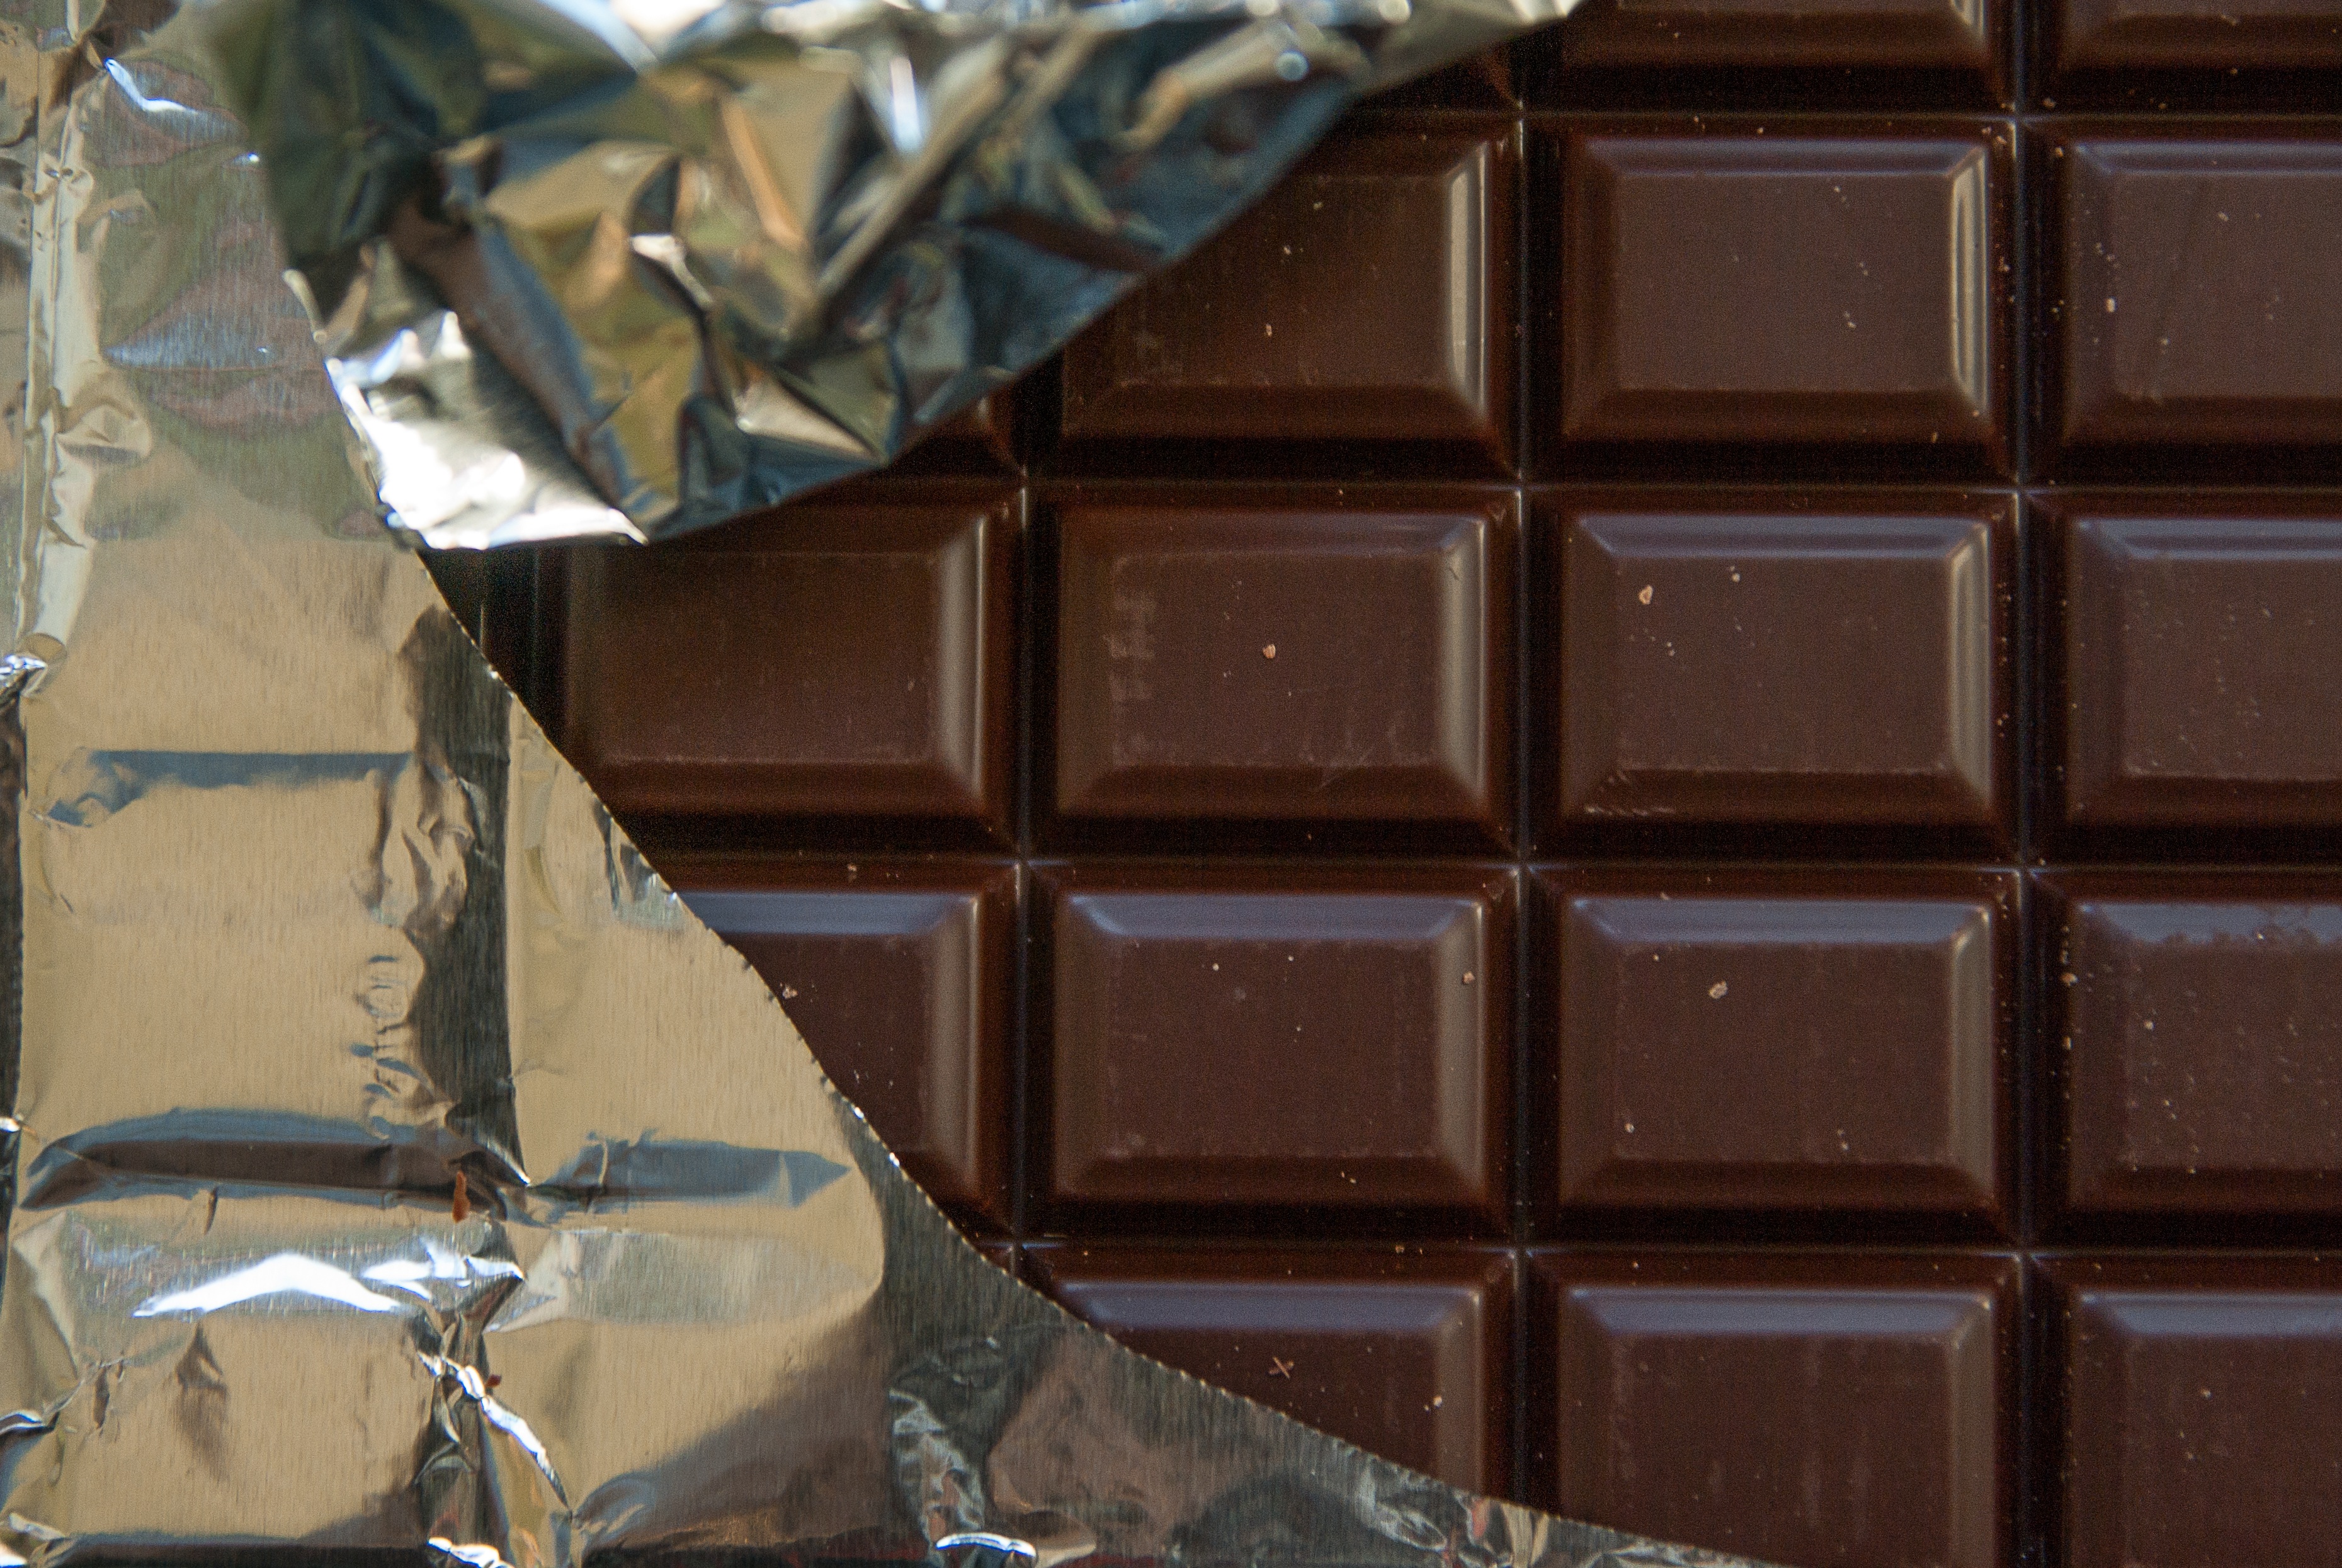 Beneficios del chocolate puro. Tableta de chocolate oscuro